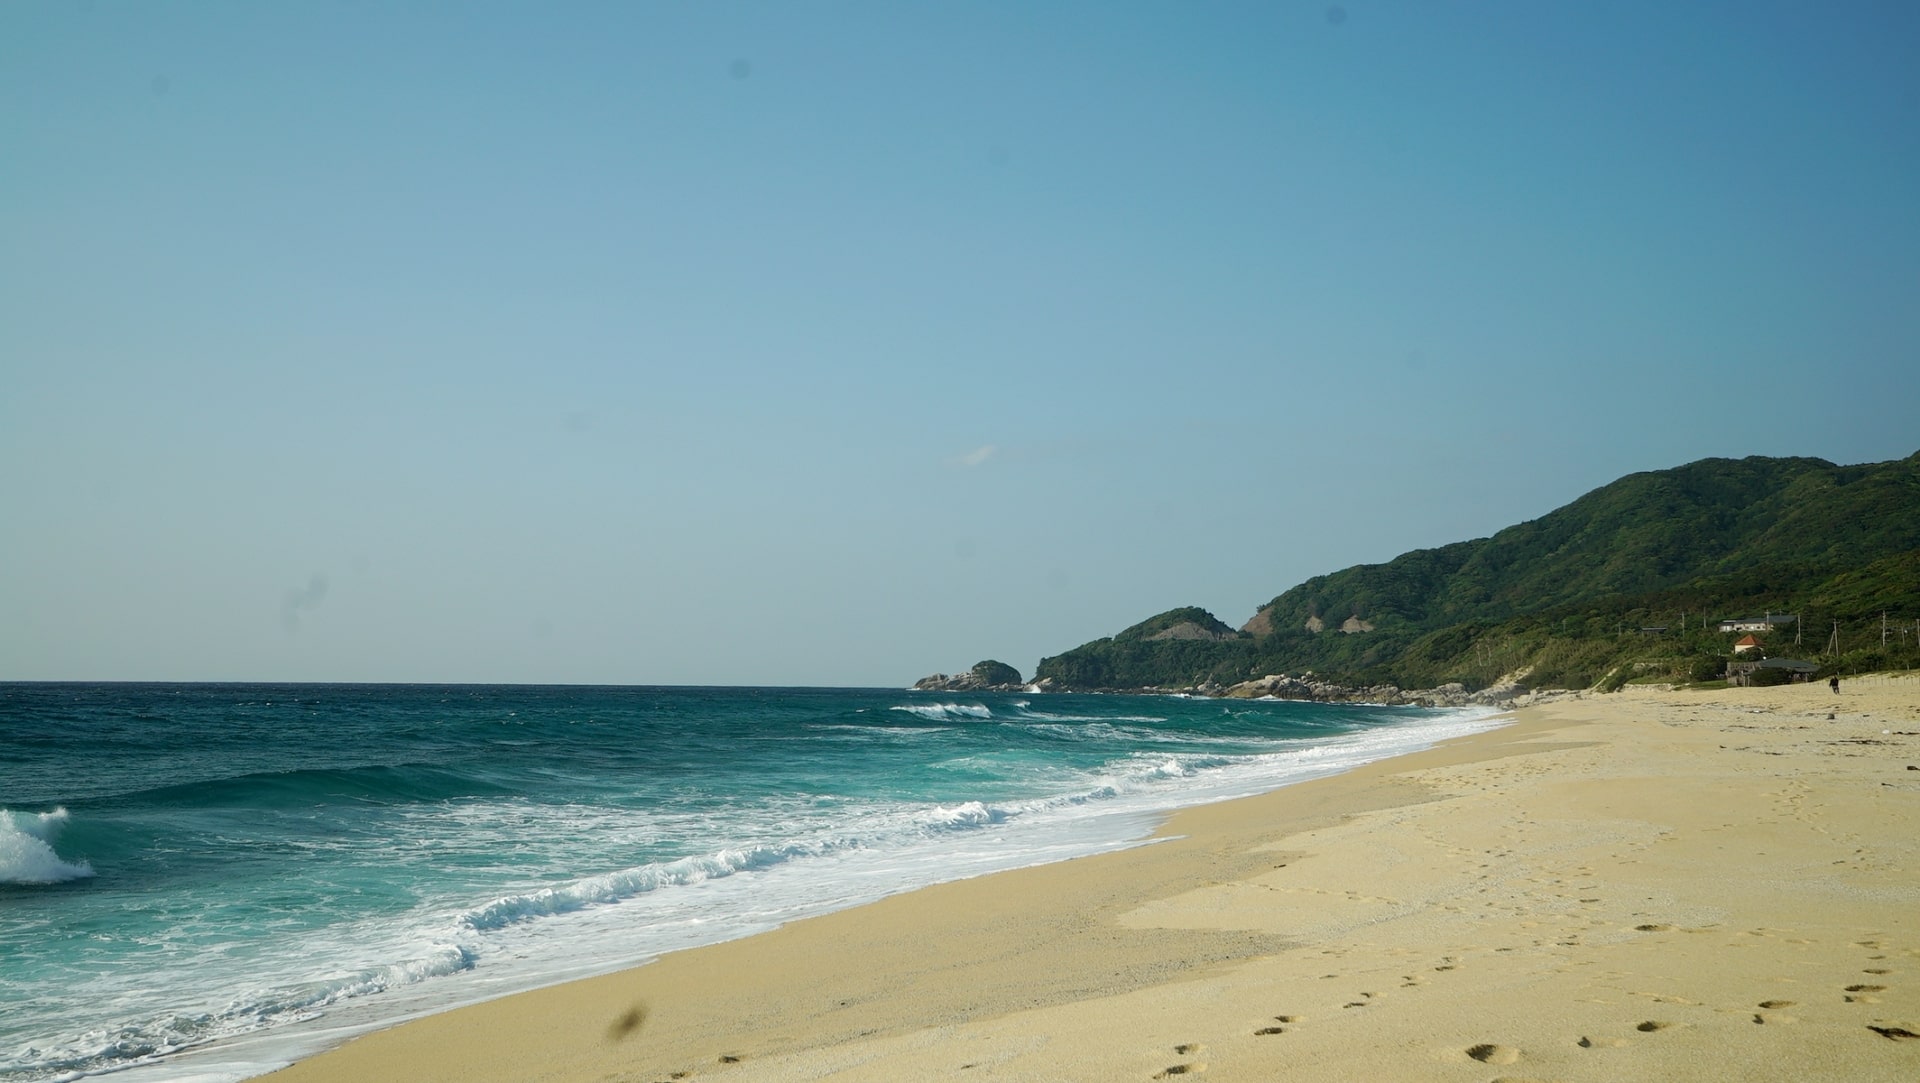 Nagata Inakahama Beach